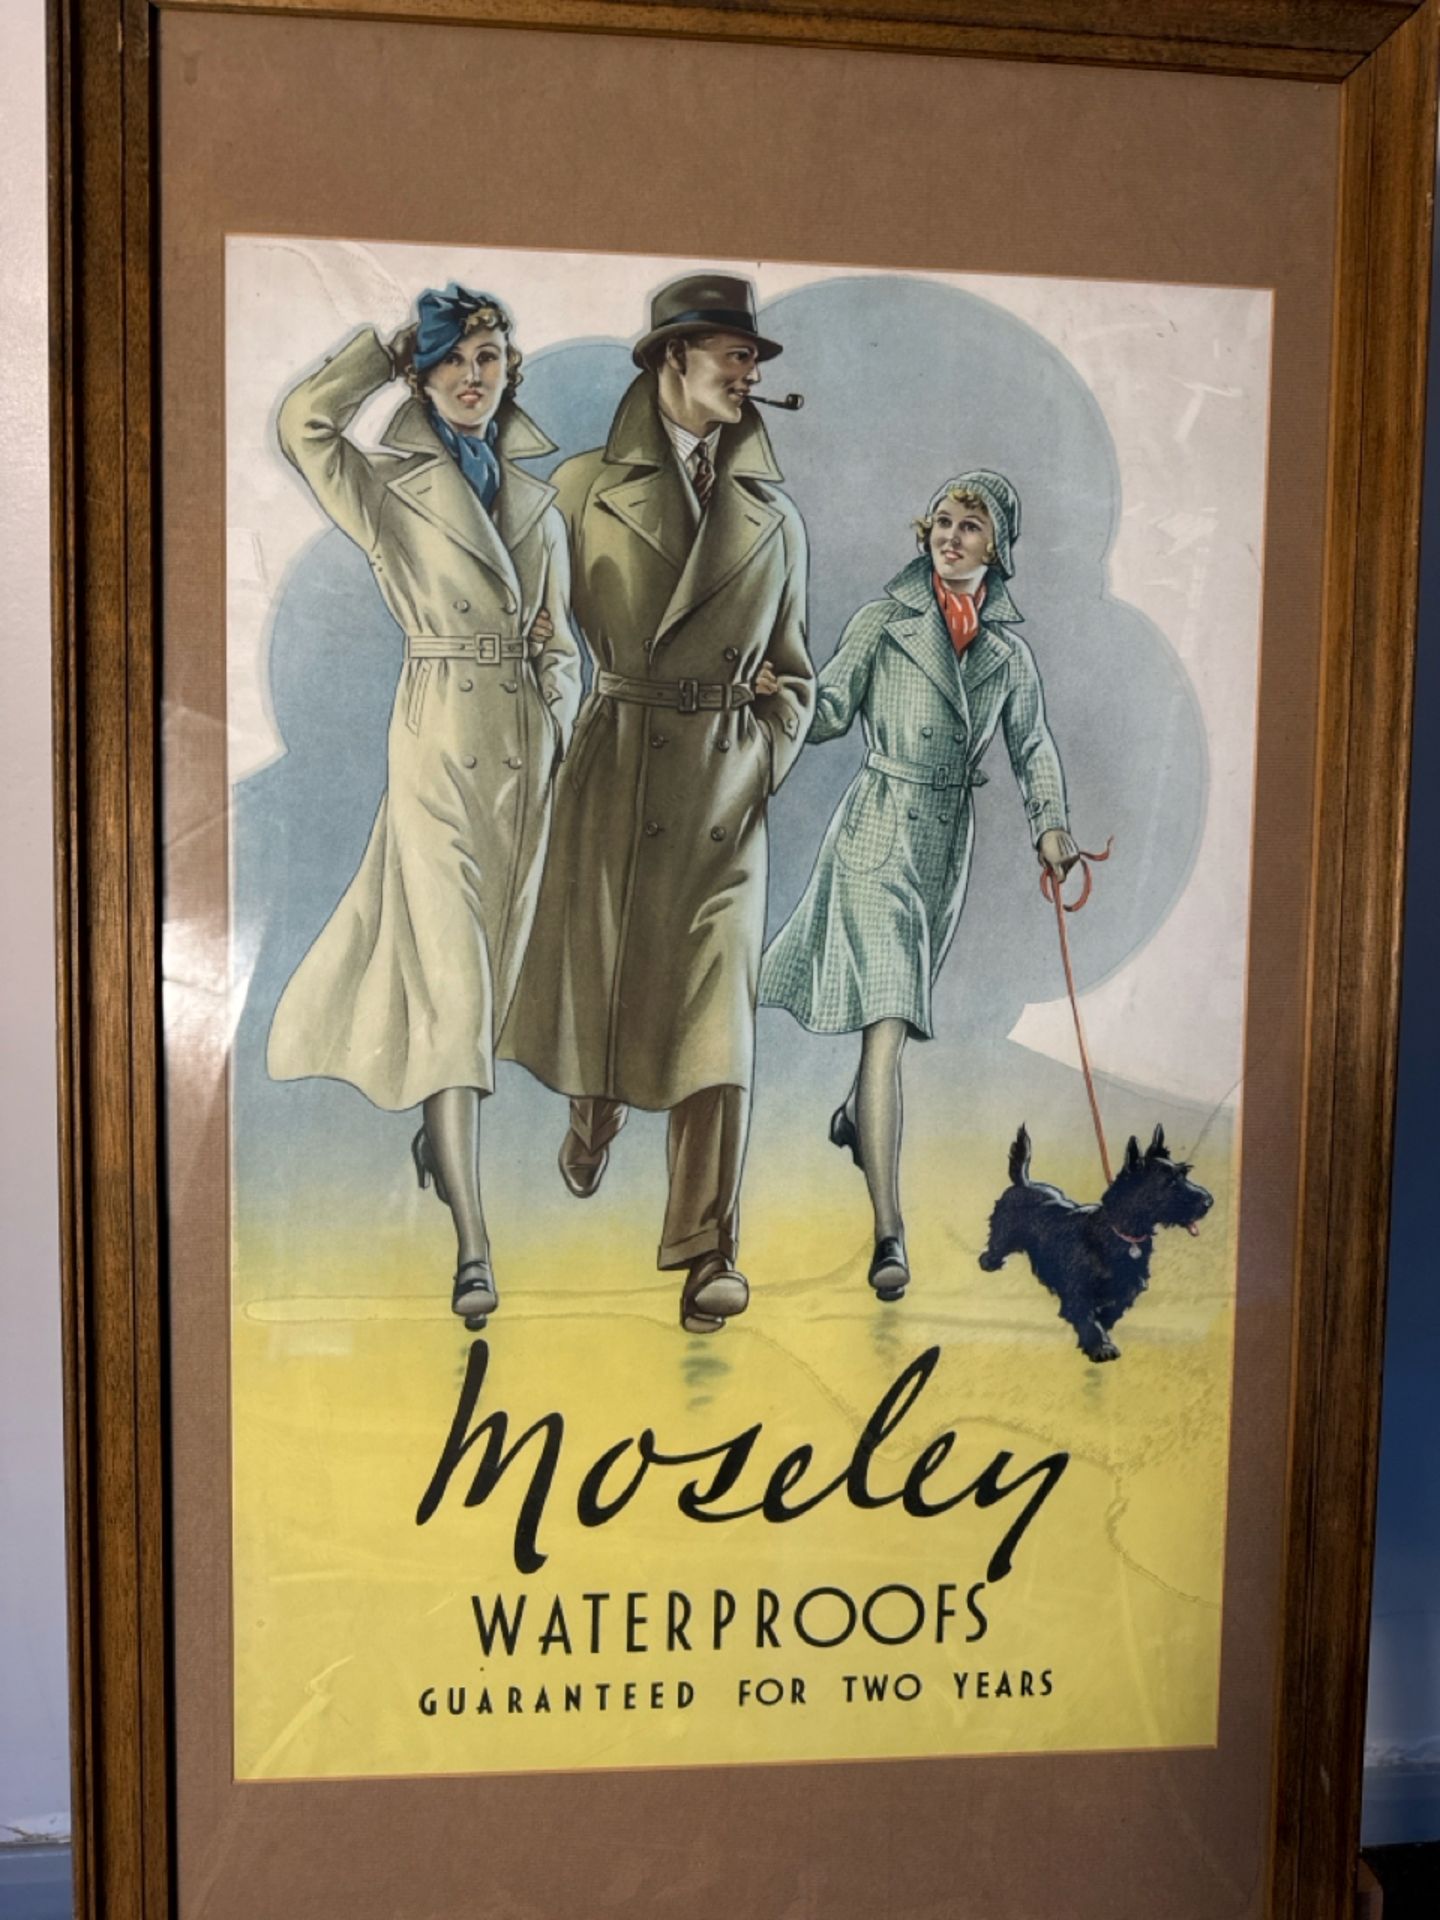 (ref 39) Moseley Waterproofs Artwork Print - Image 2 of 2